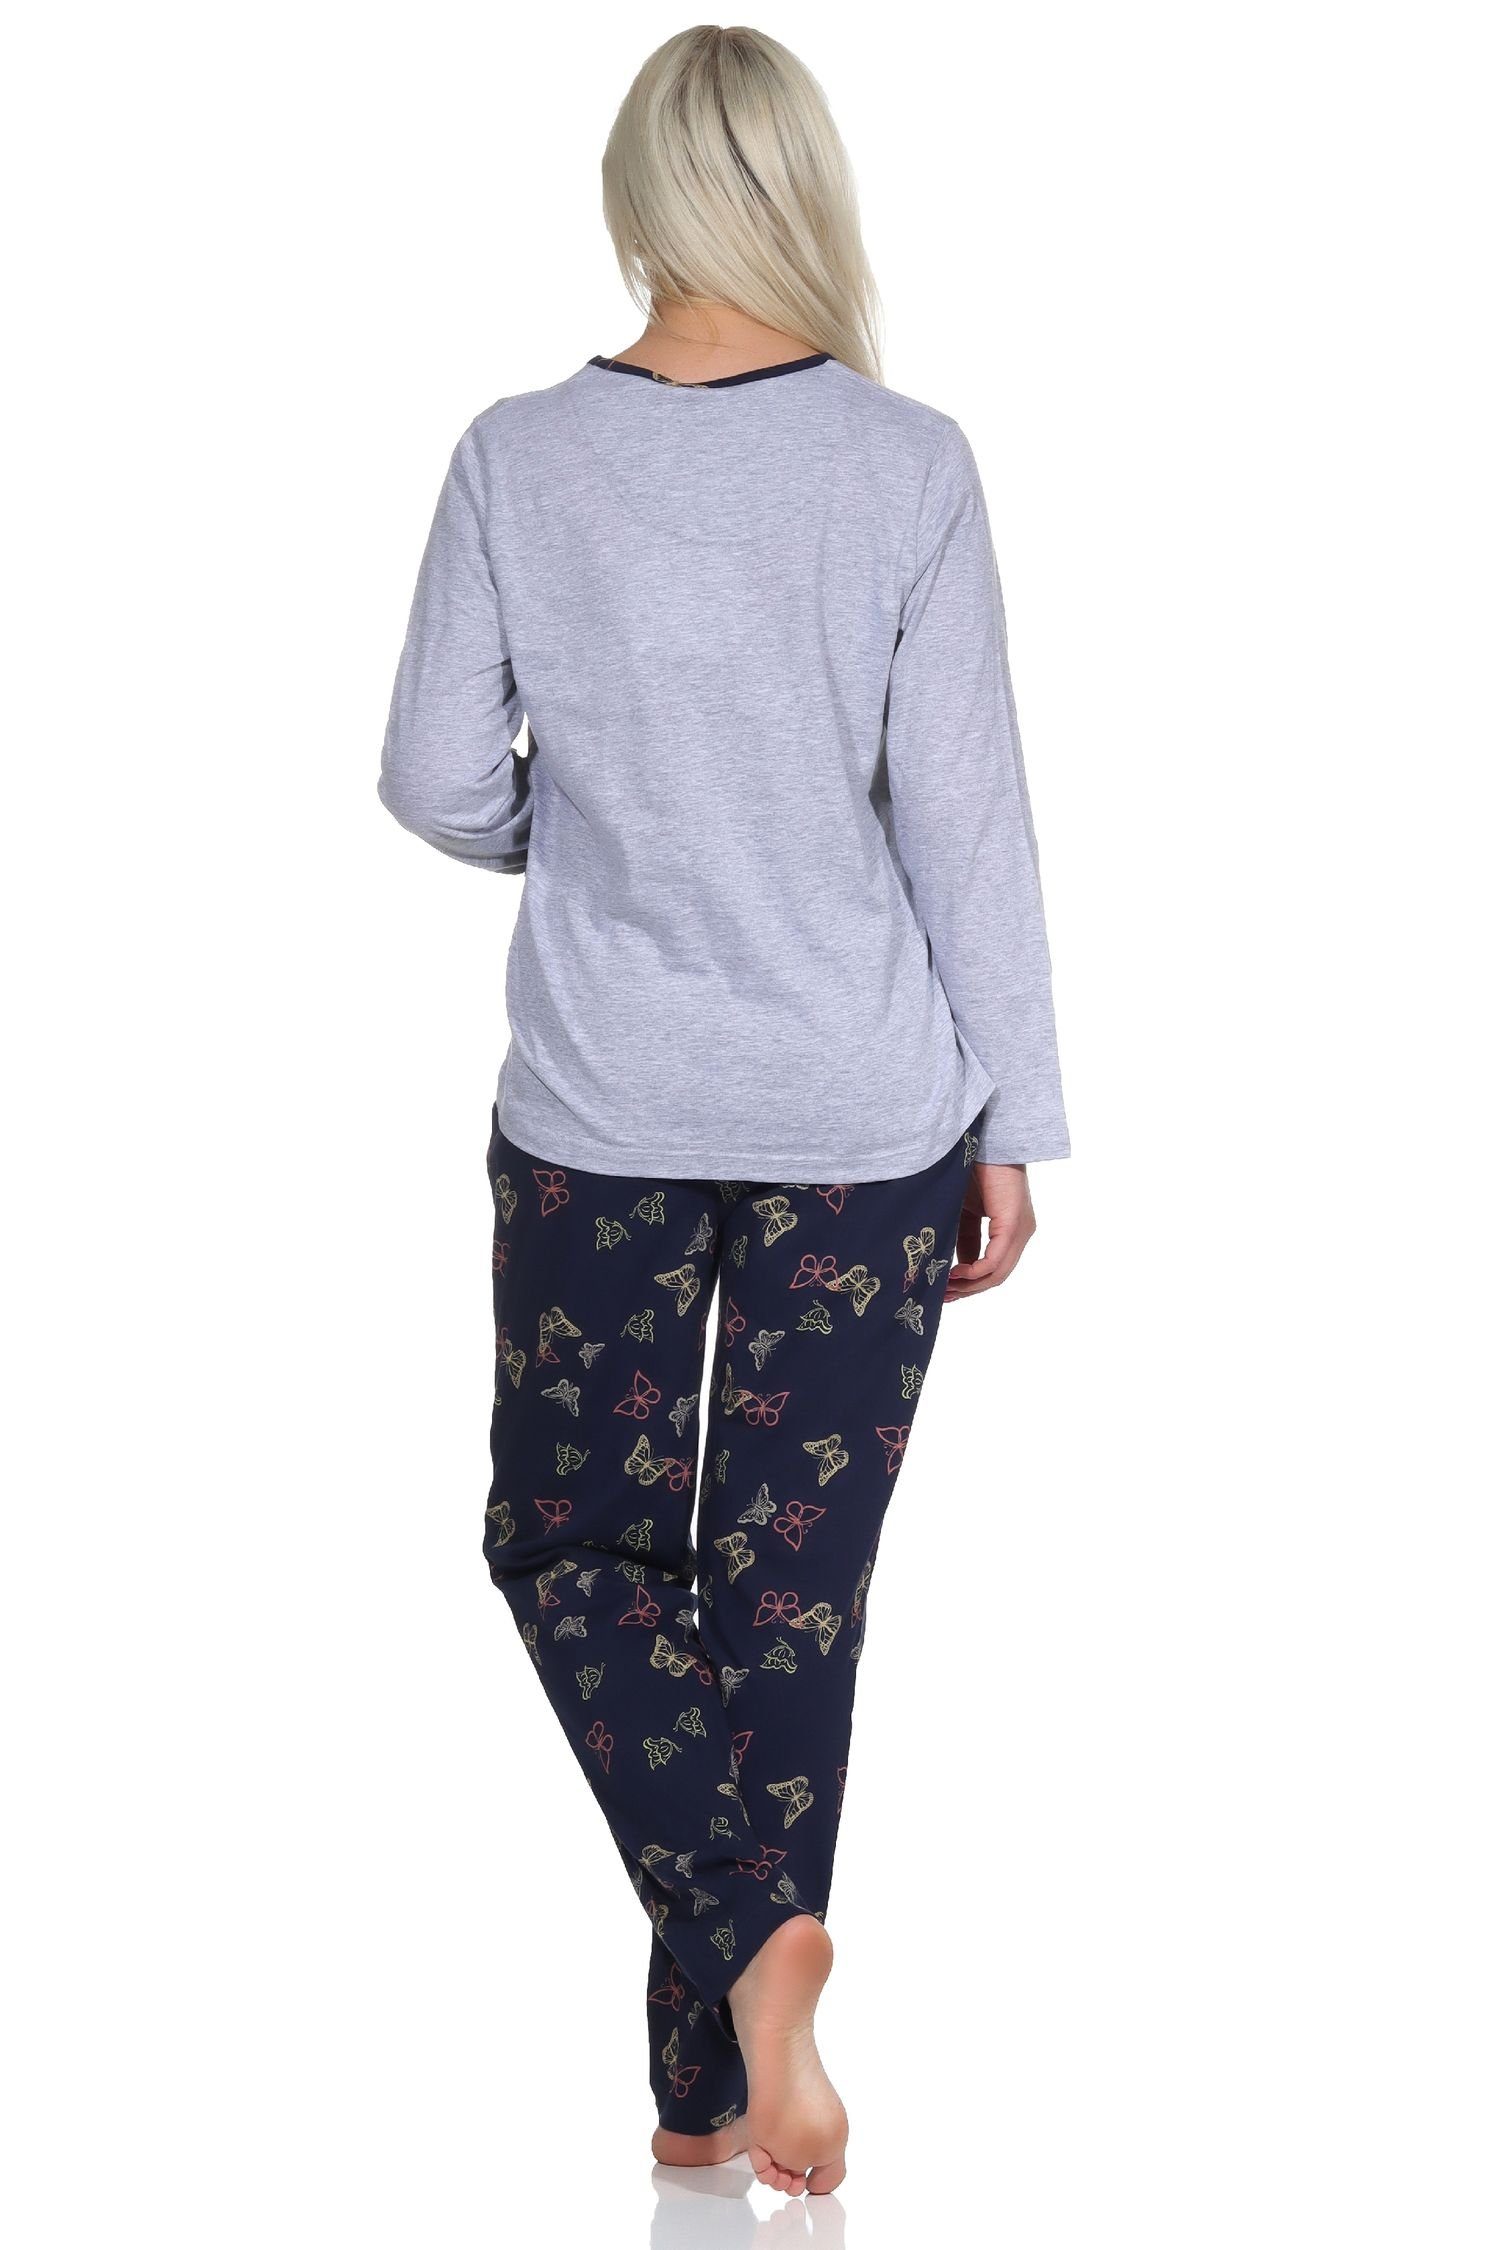 grau-melange Schmetterling als langarm Damen Motiv Pyjama Normann Schlafanzug mit